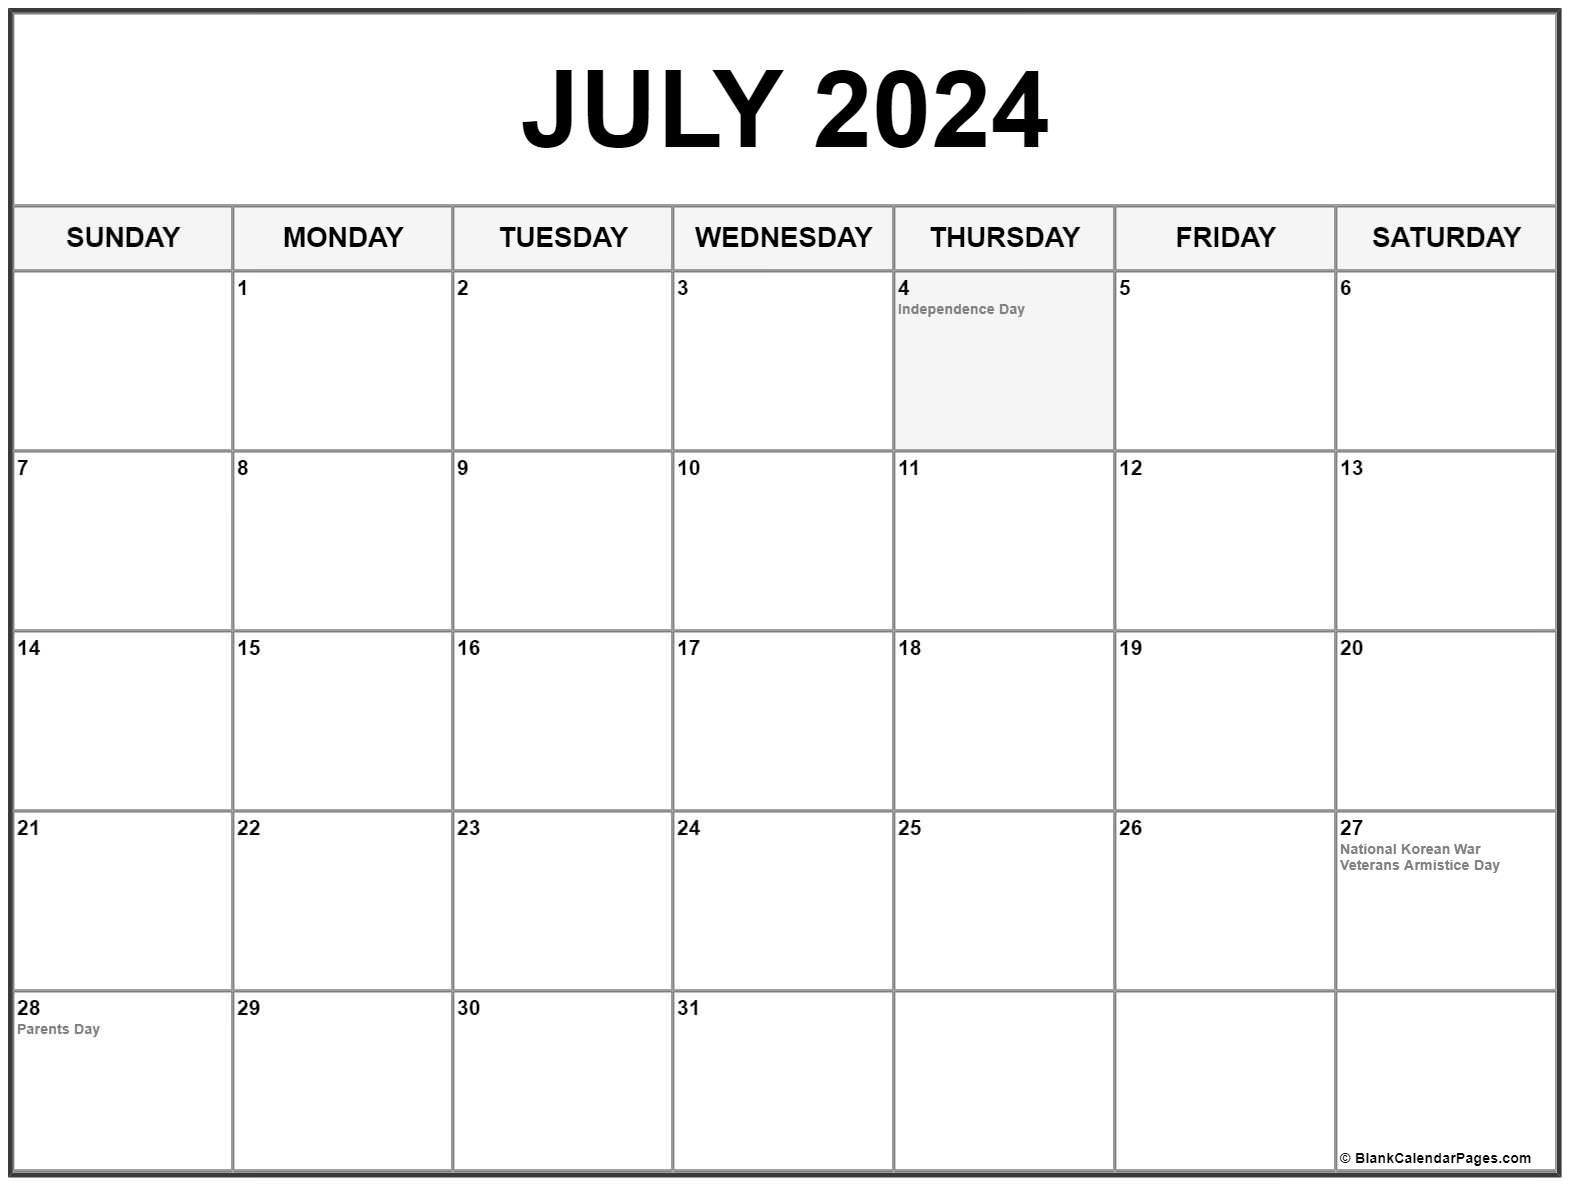 2023 Holidays July Get Calendar 2023 Update